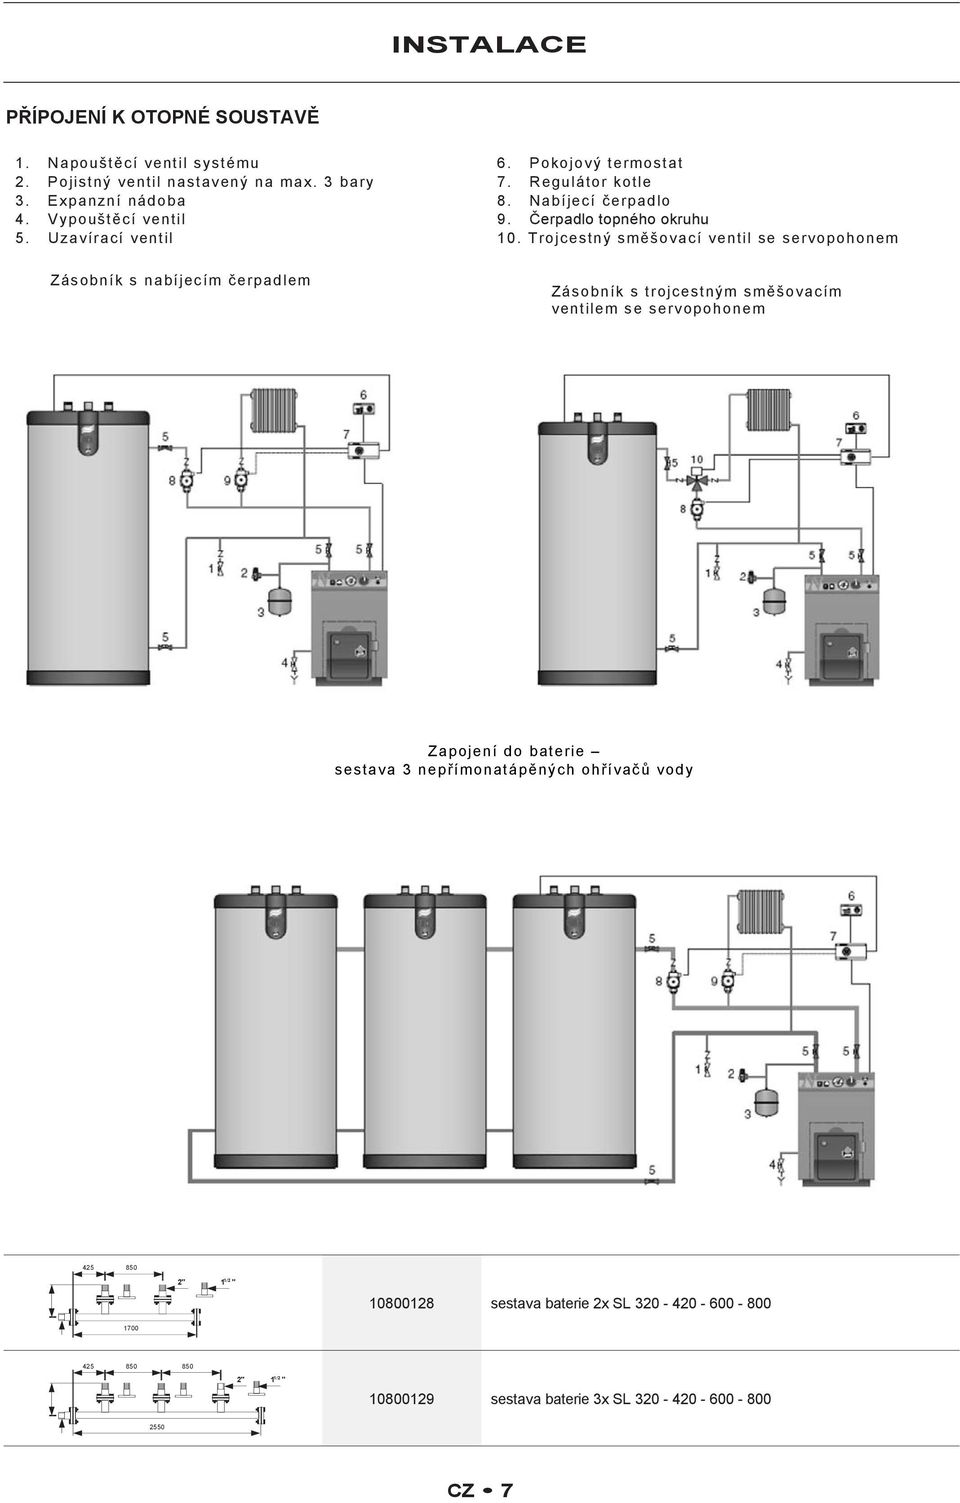 Trojcestný směšovací ventil se servopohonem Zásobník s trojcestným směšovacím ventilem se servopohonem Zapojení do baterie sestava 3 nepřímonatápěných